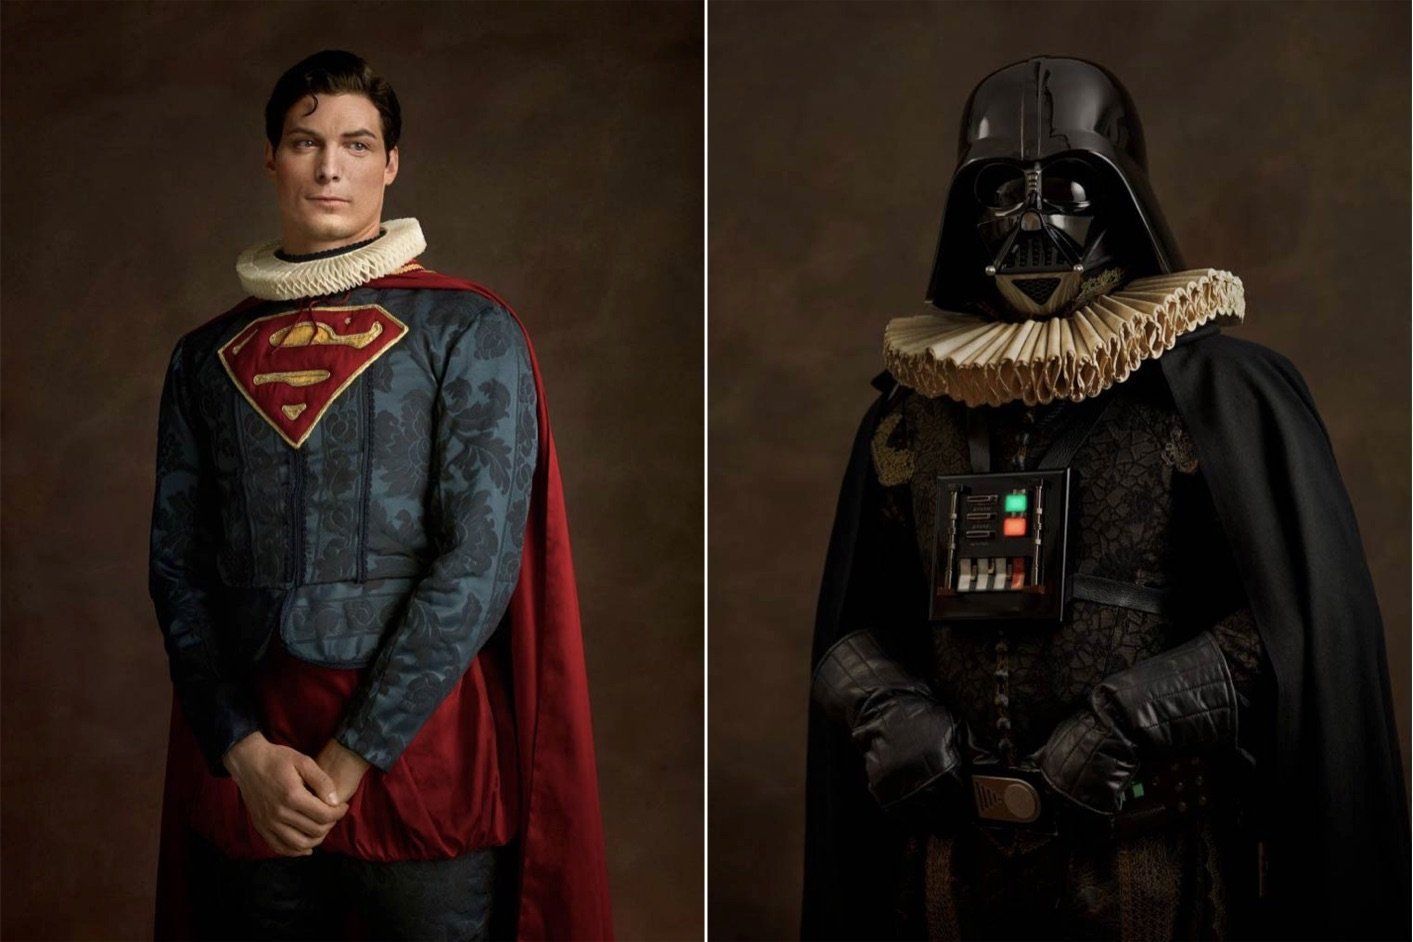 Des portraits de Super Héros façon XVème Siècle